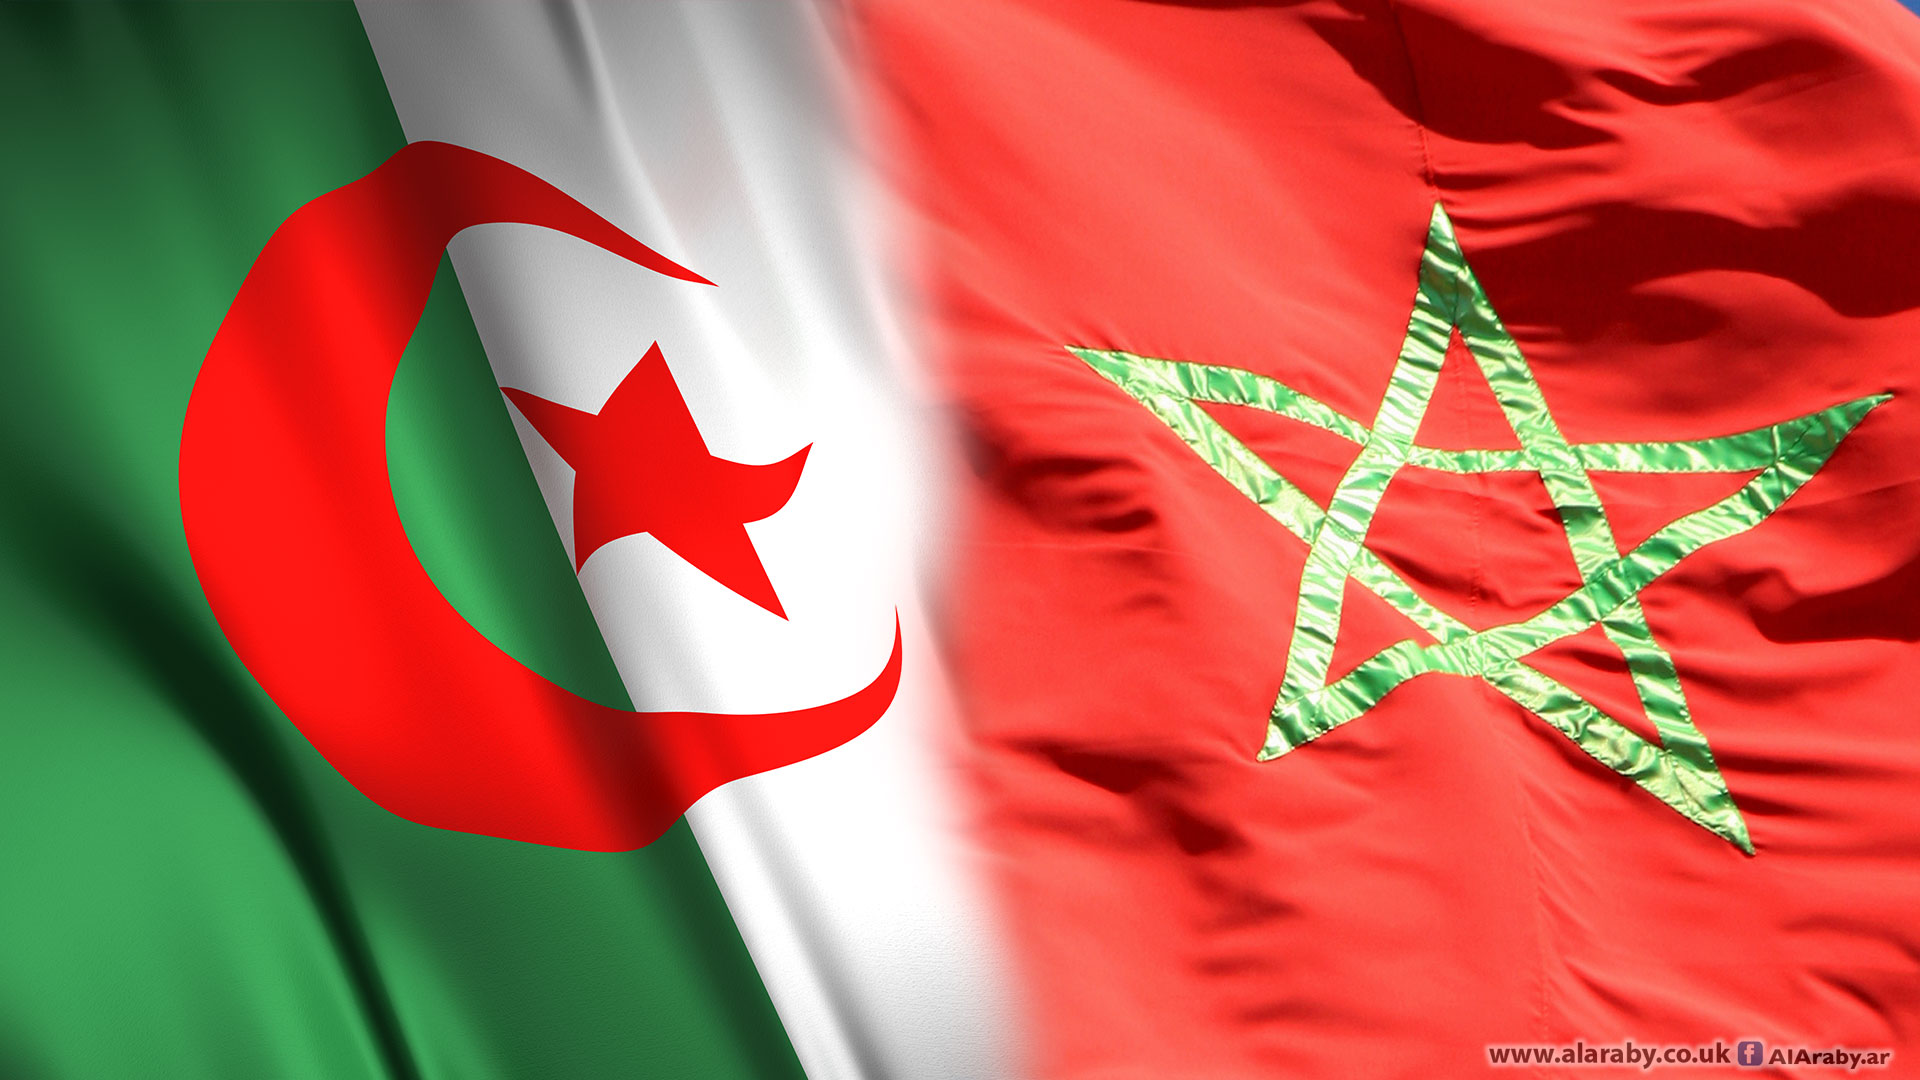 اتحاد علماء المسلمين يدعو المغرب والجزائر للحوار ويحذر من الفتنة التي تغذيها الأصوات والأبواق المأجورة (فيديو)